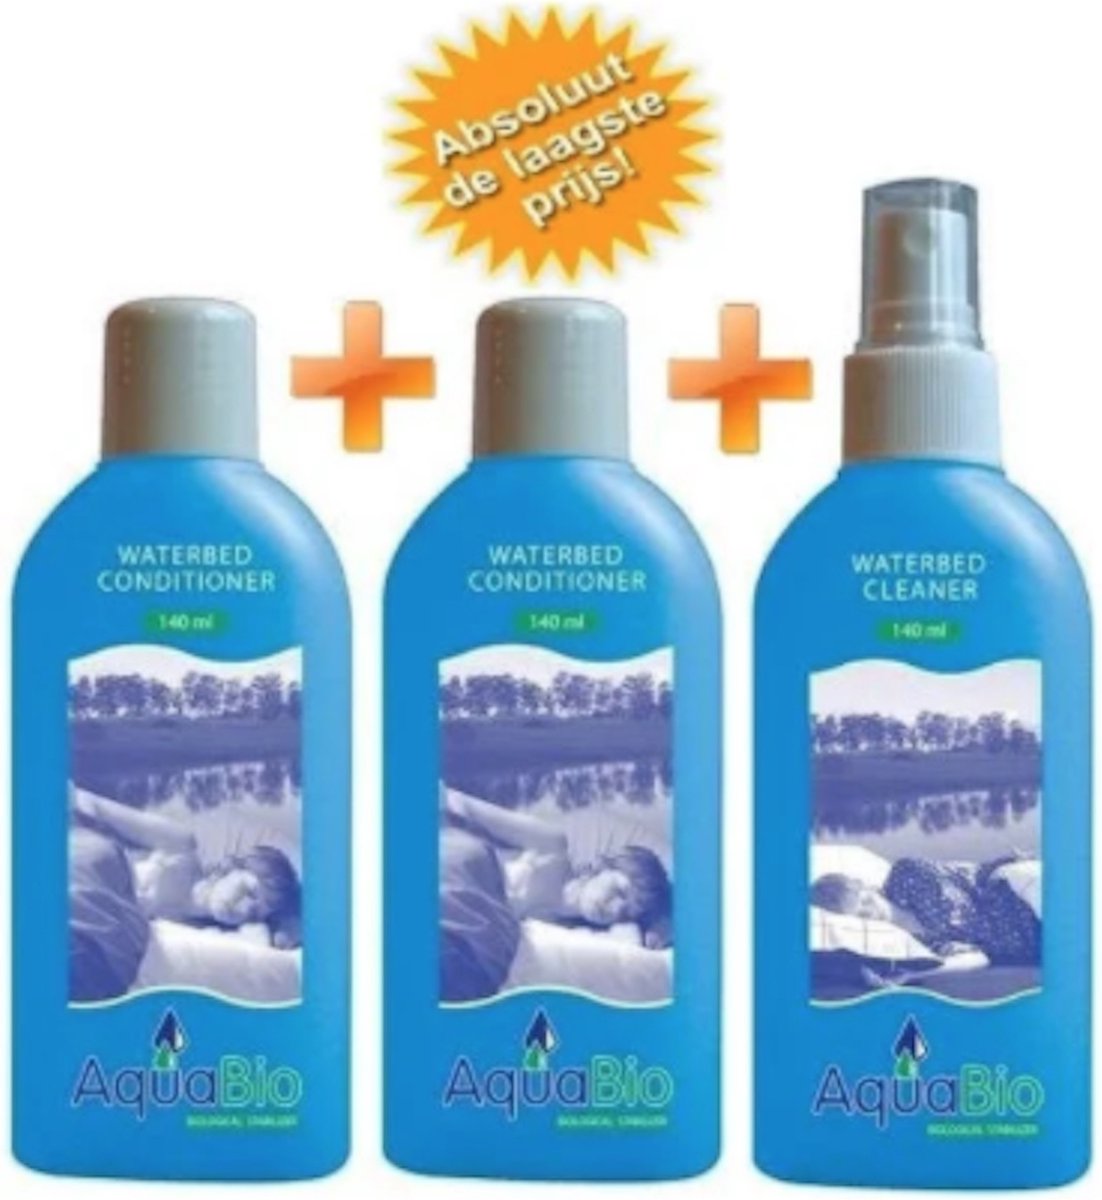 AquaBio - 2x Waterbed Conditioner - 1x Vinyl Waterbed Reiniger - 12 maanden - 140 ml - 100% Biologisch